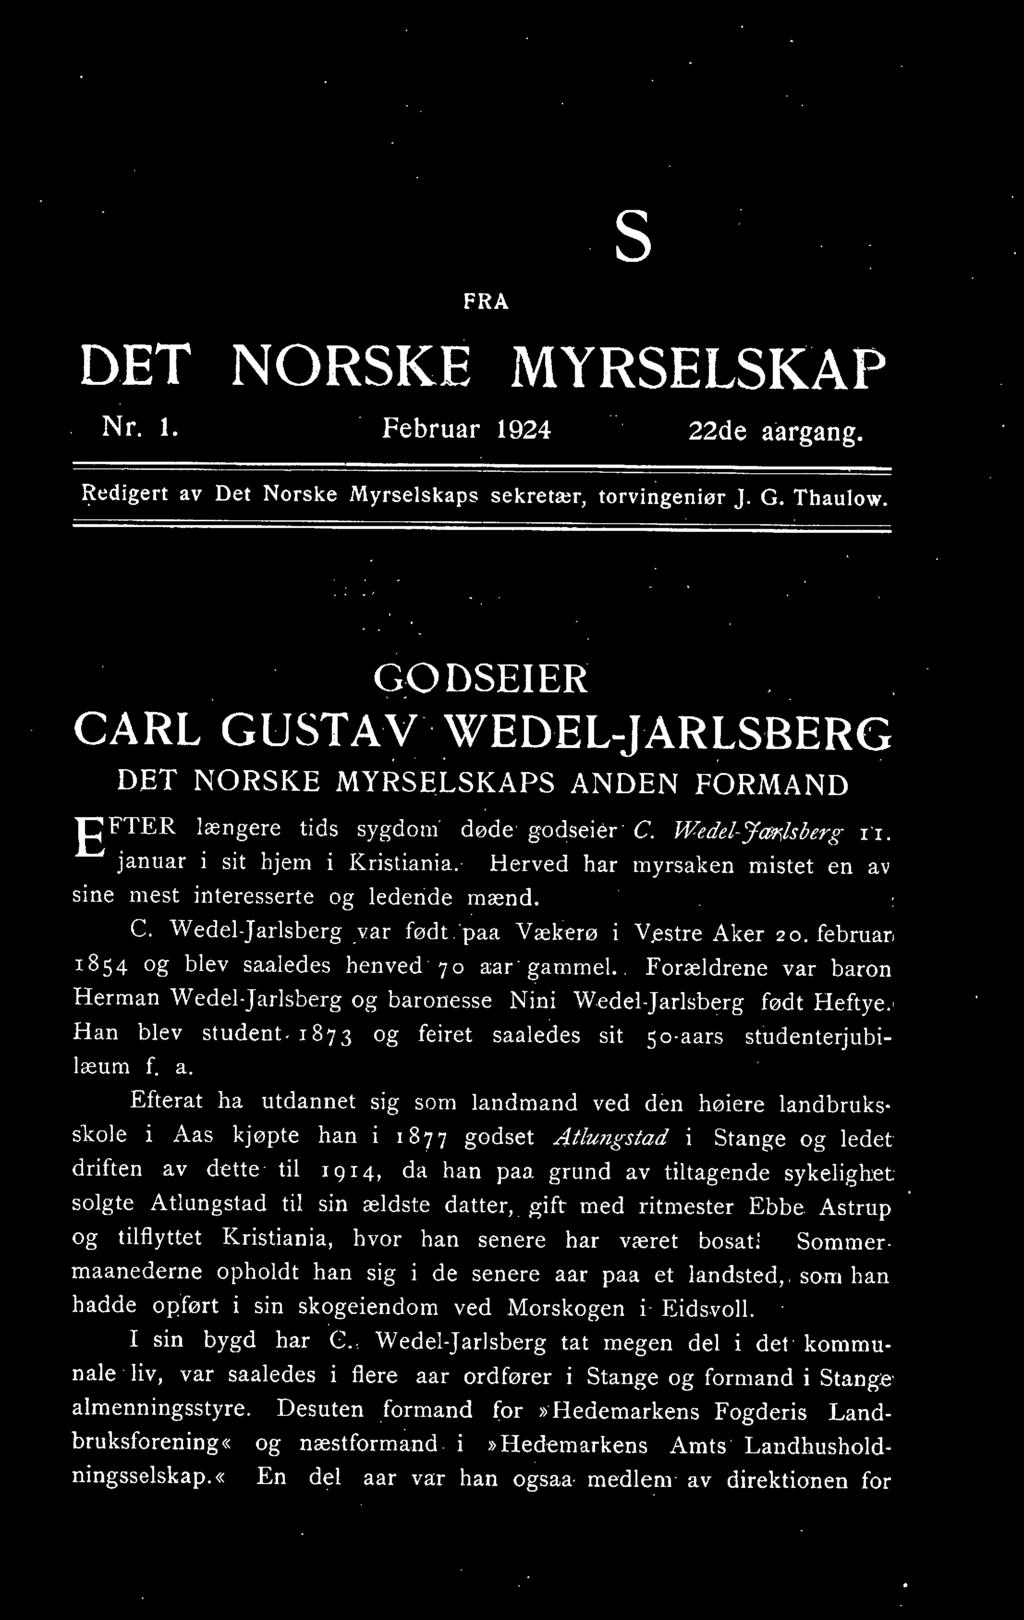 Herved har myrsaken mistet en av sine mest interesserte og lederide mænd. C. Wedel-Jarlsberg yar født 'paa Vækerø i Vestre Aker 20. februar. 1854 og blev saaledes henved 70 aar &'amme!